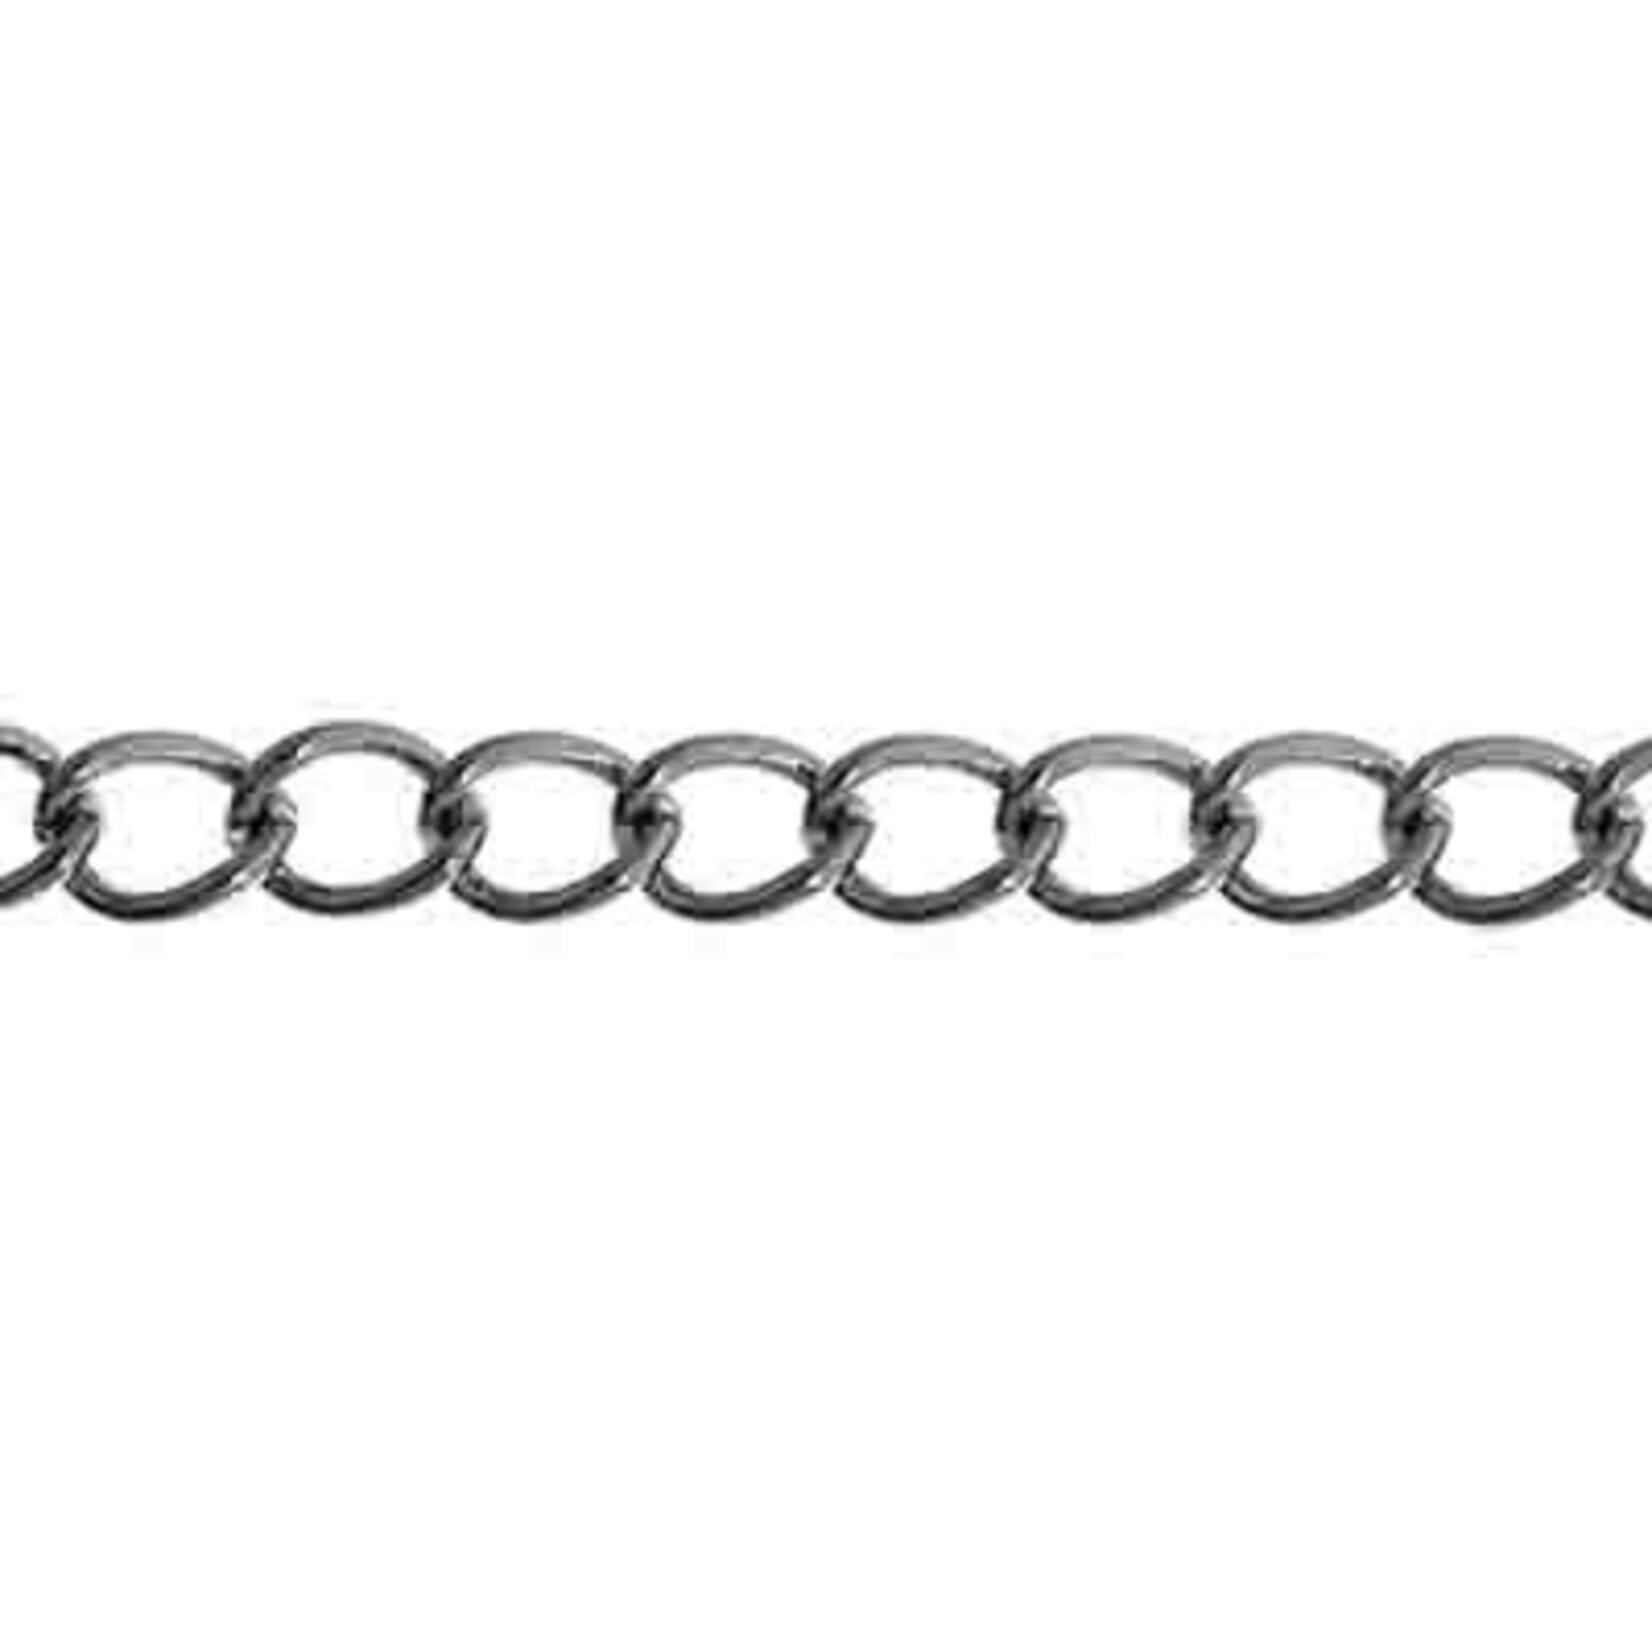 Dazzle-it Curb Chain 5x3.5mm